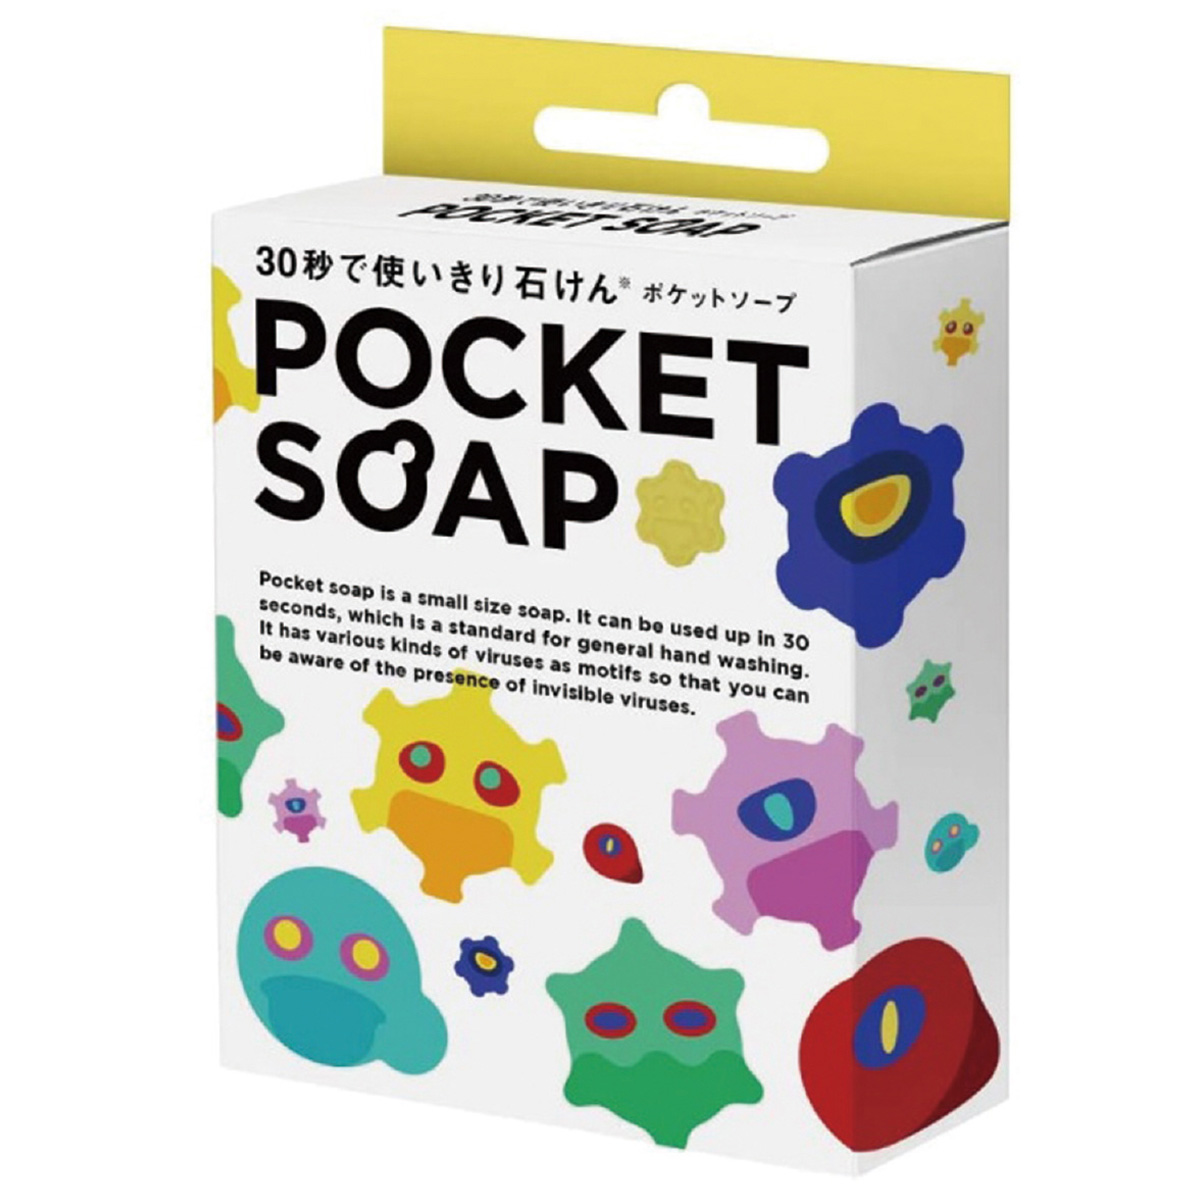 石鹸 36個 日本製 固形石鹸 小さい 1回分 使い切り POKET SOAP 保育園 幼稚園 手洗い 練習 仕掛け アイデアグッズ 子供